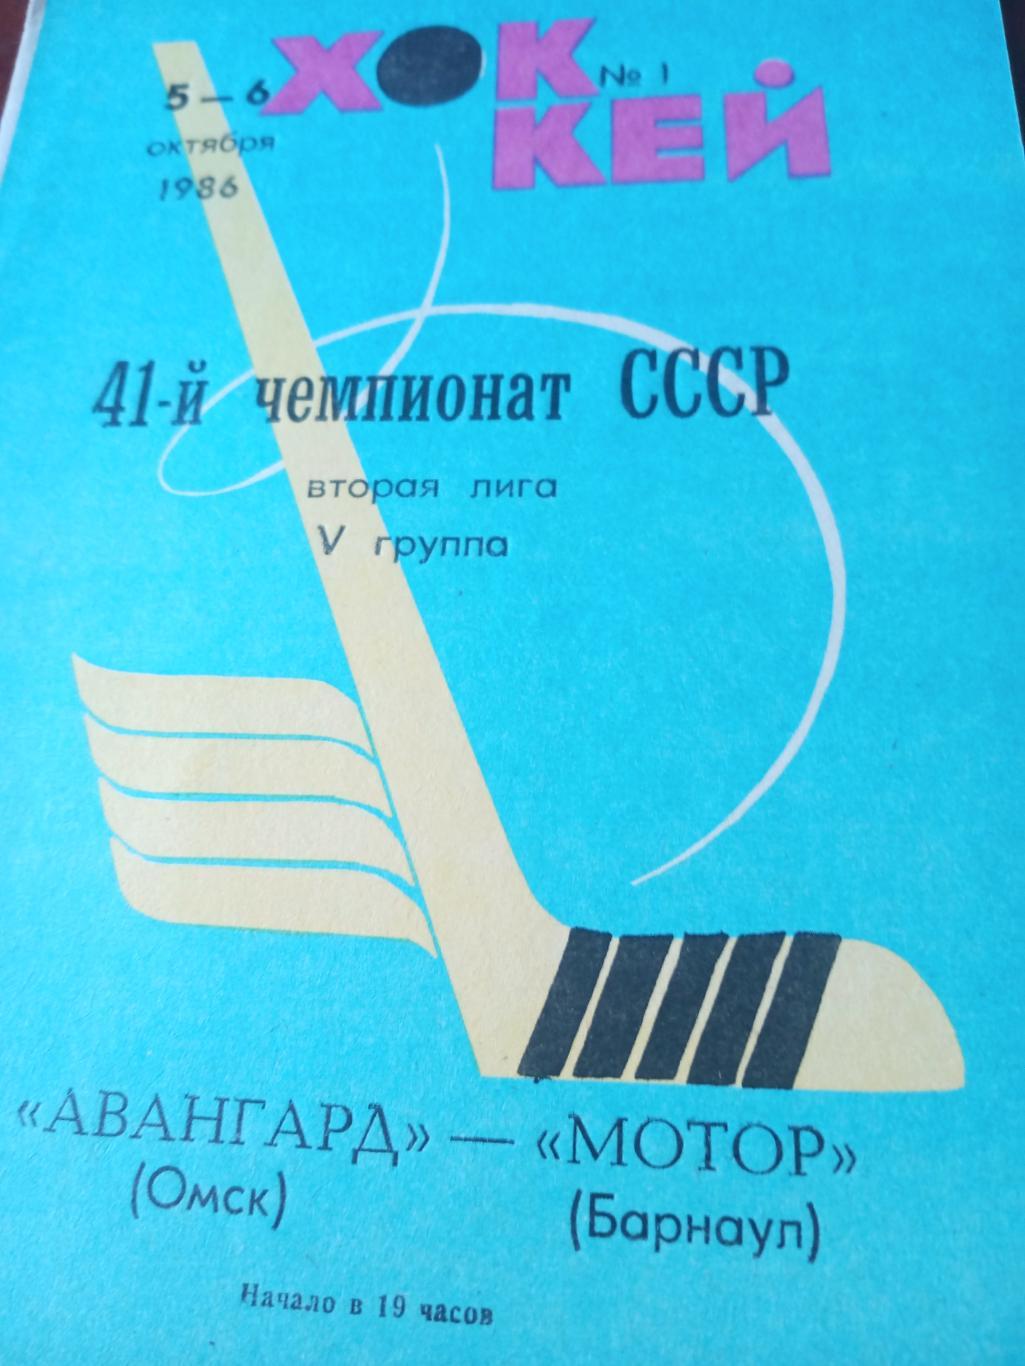 Авангард Омск - Мотор Барнаул. 5 и 6 октября 1986 год